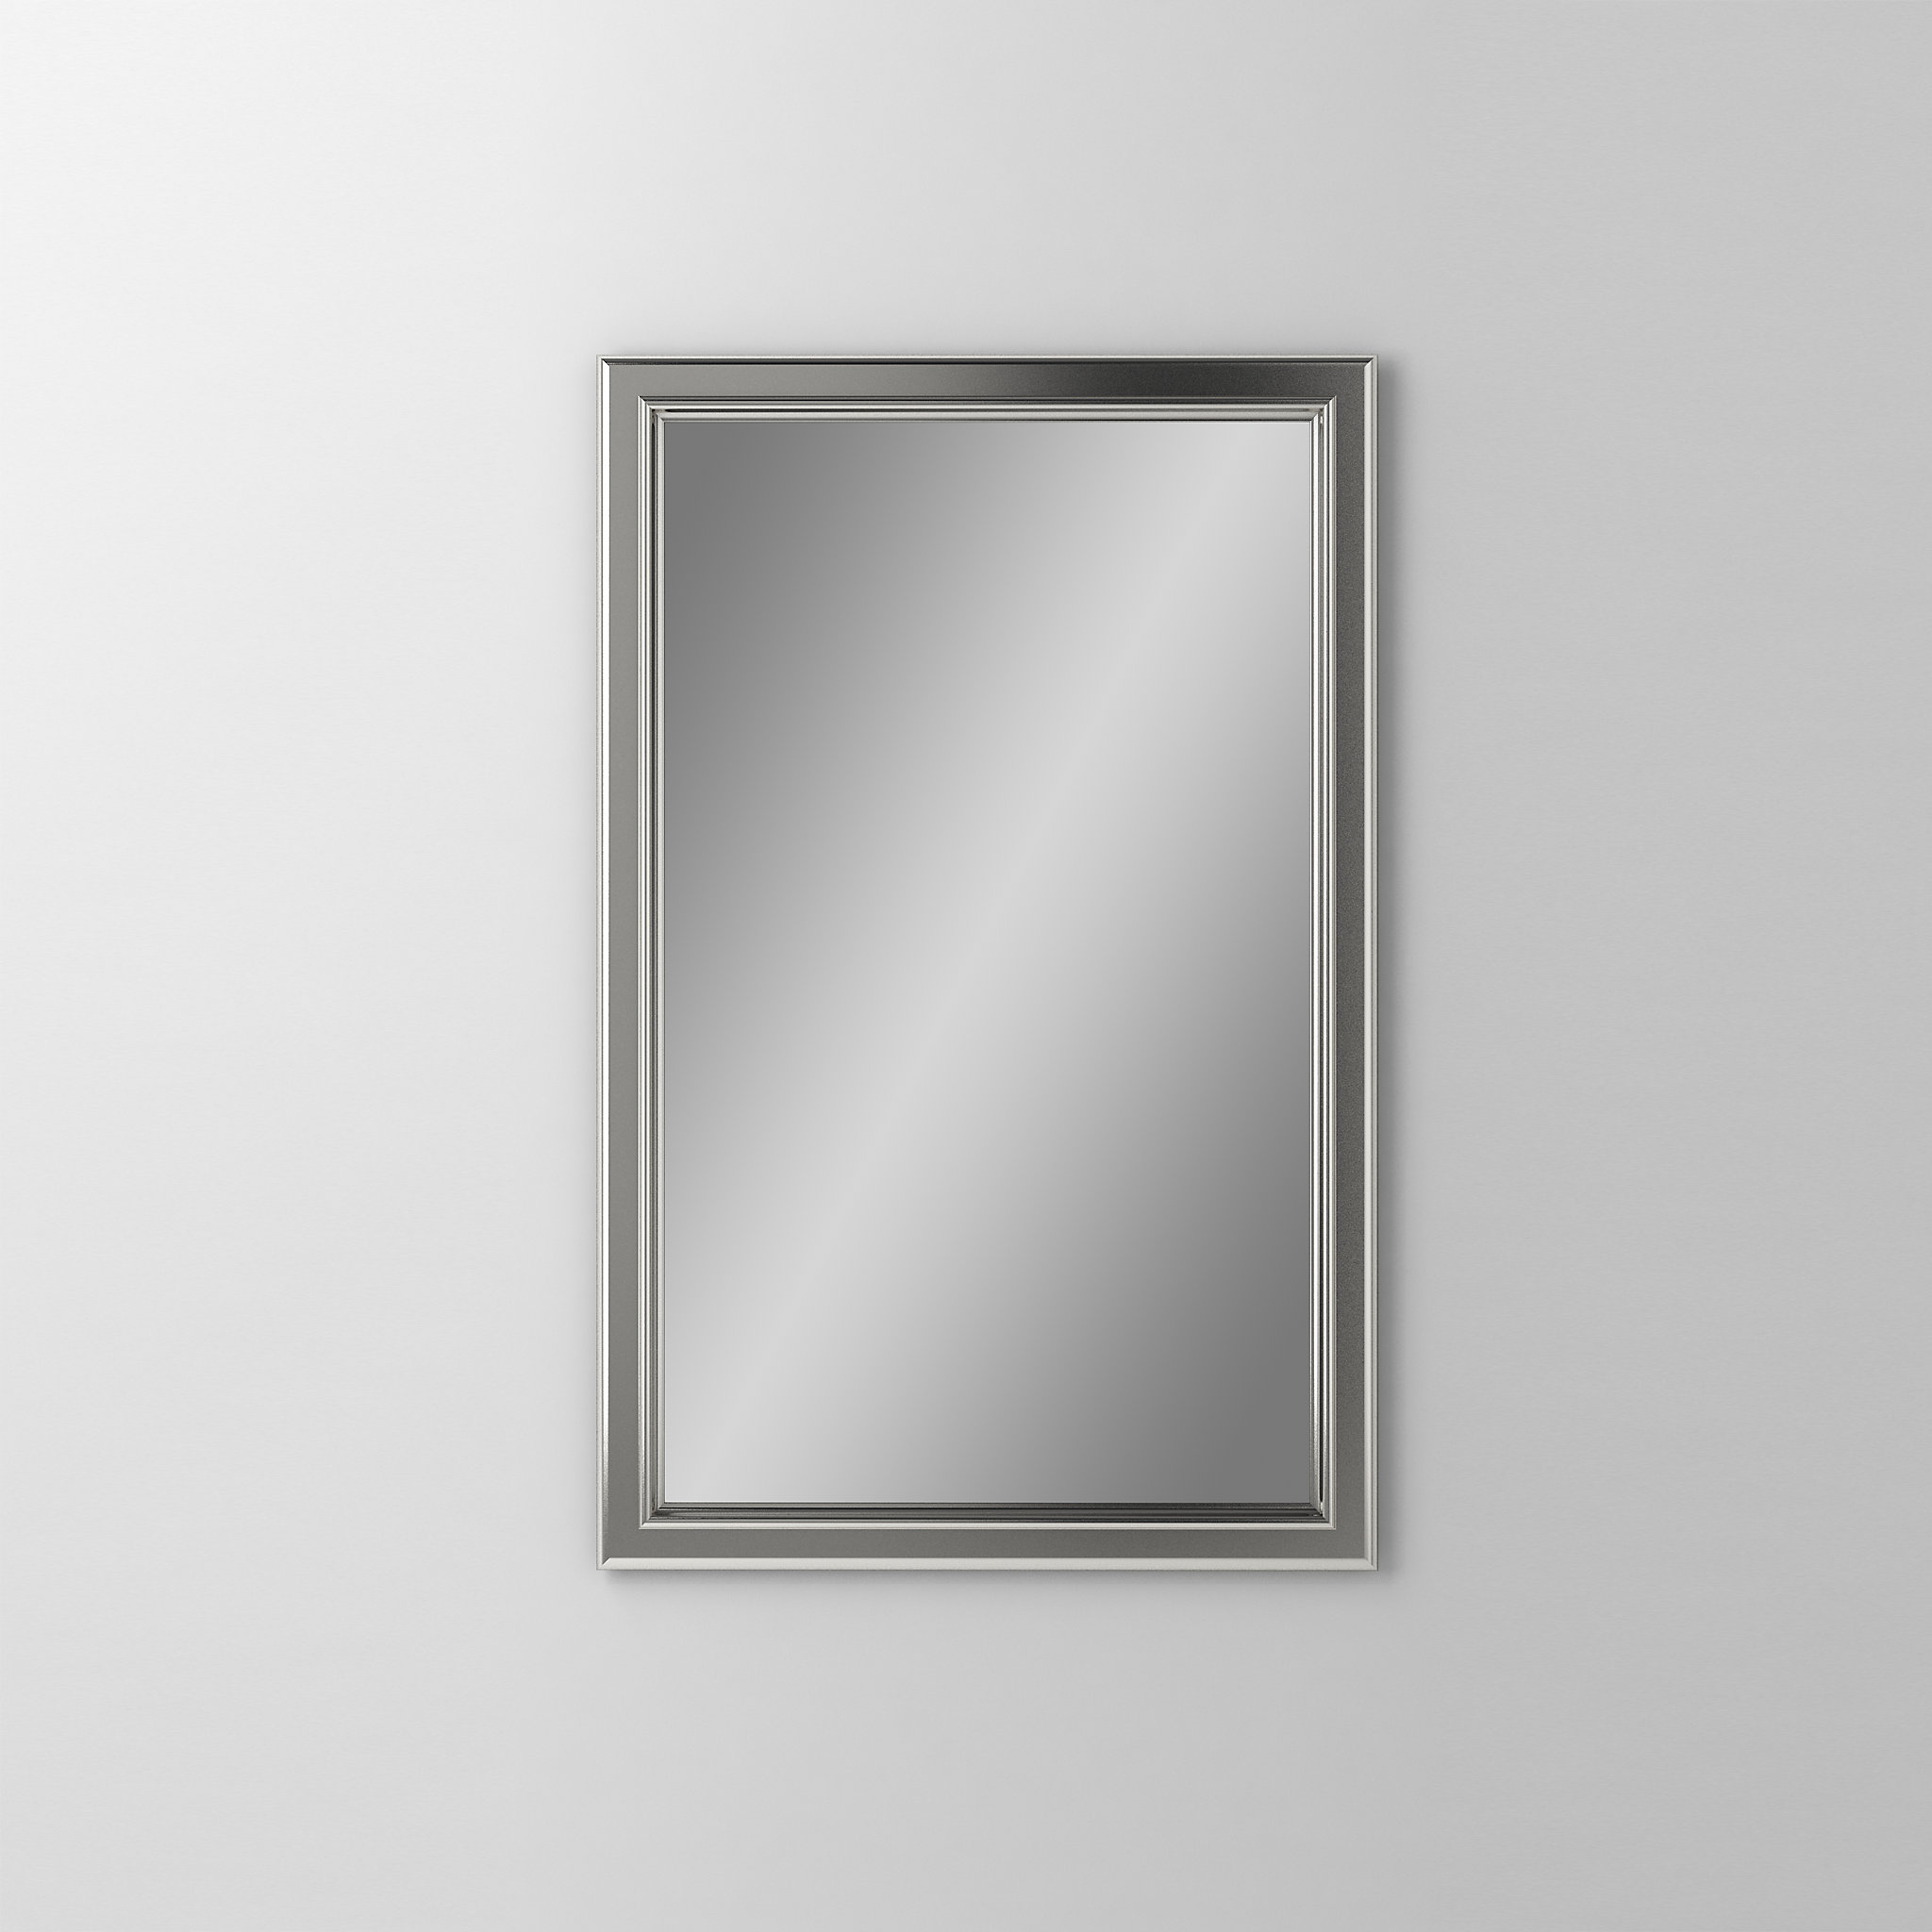 Robern DM2030BM70Main Line Mirror, 20" x 30" x 1-5/8", Bryn Mawr Frame, Satin Nickel